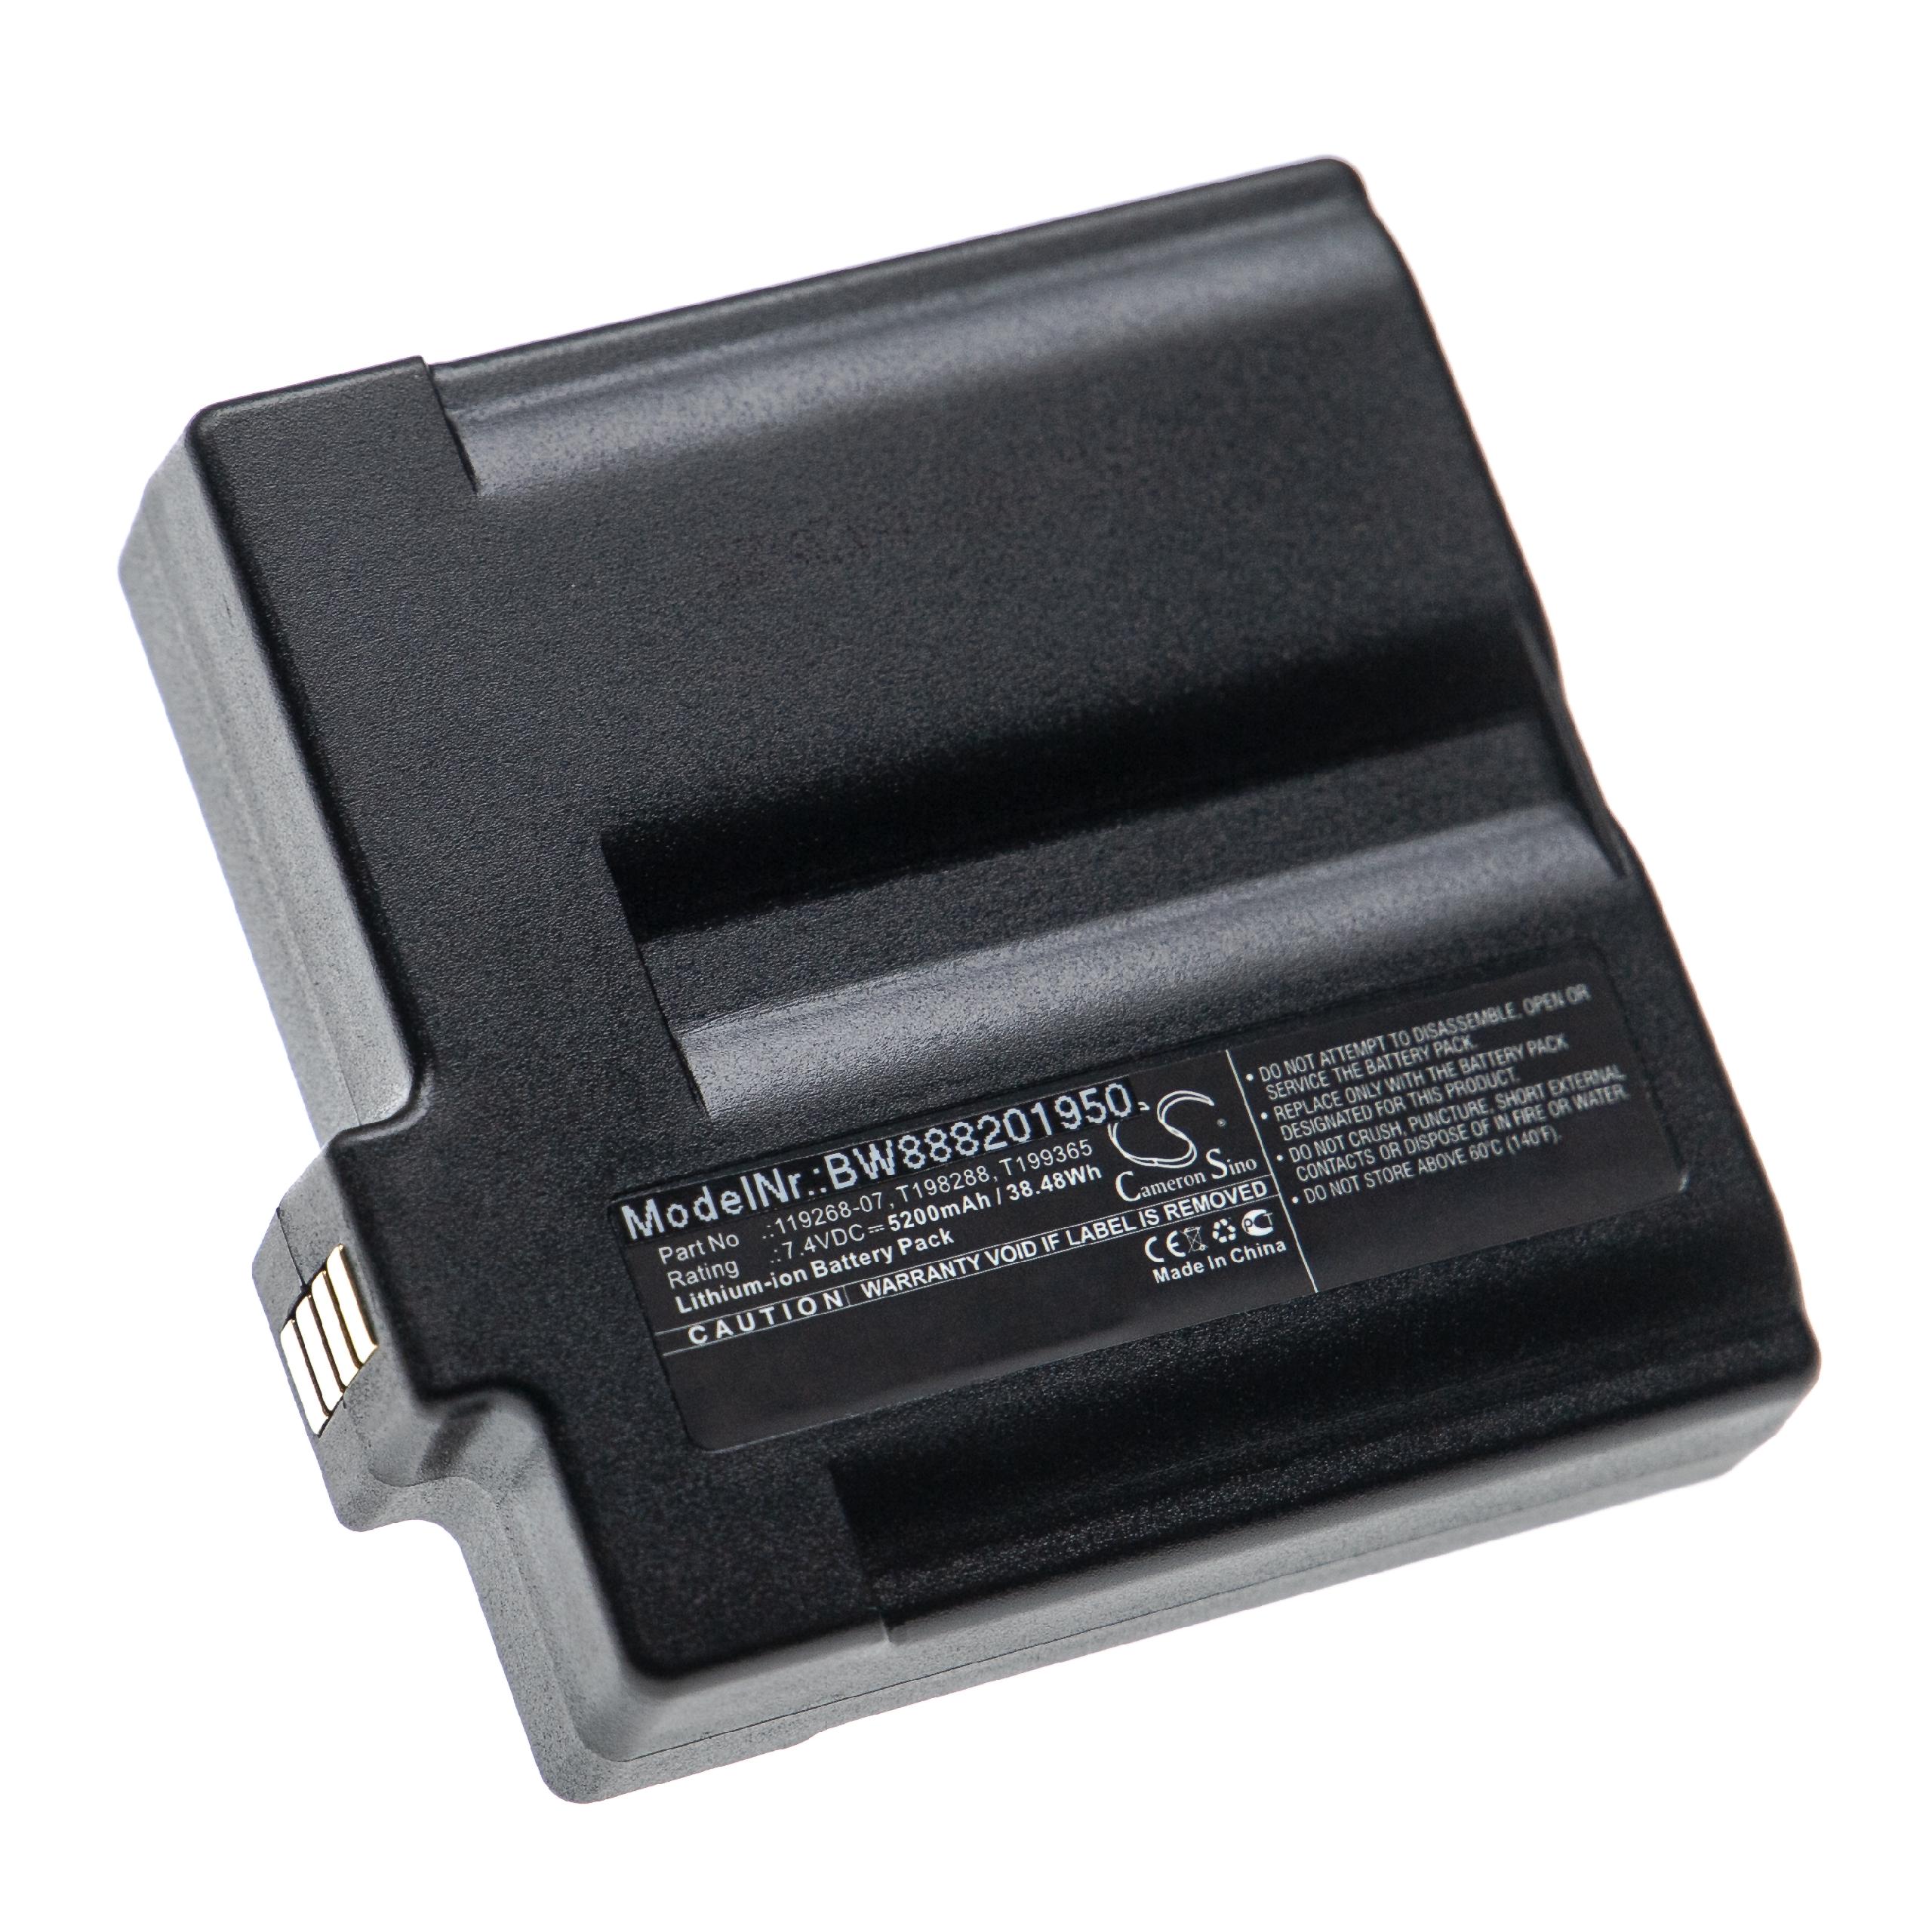 Batterie remplace Flir 119268-07, 1195268-02, 1195268-06 pour caméra infrarouge - 5200mAh 7,4V Li-ion